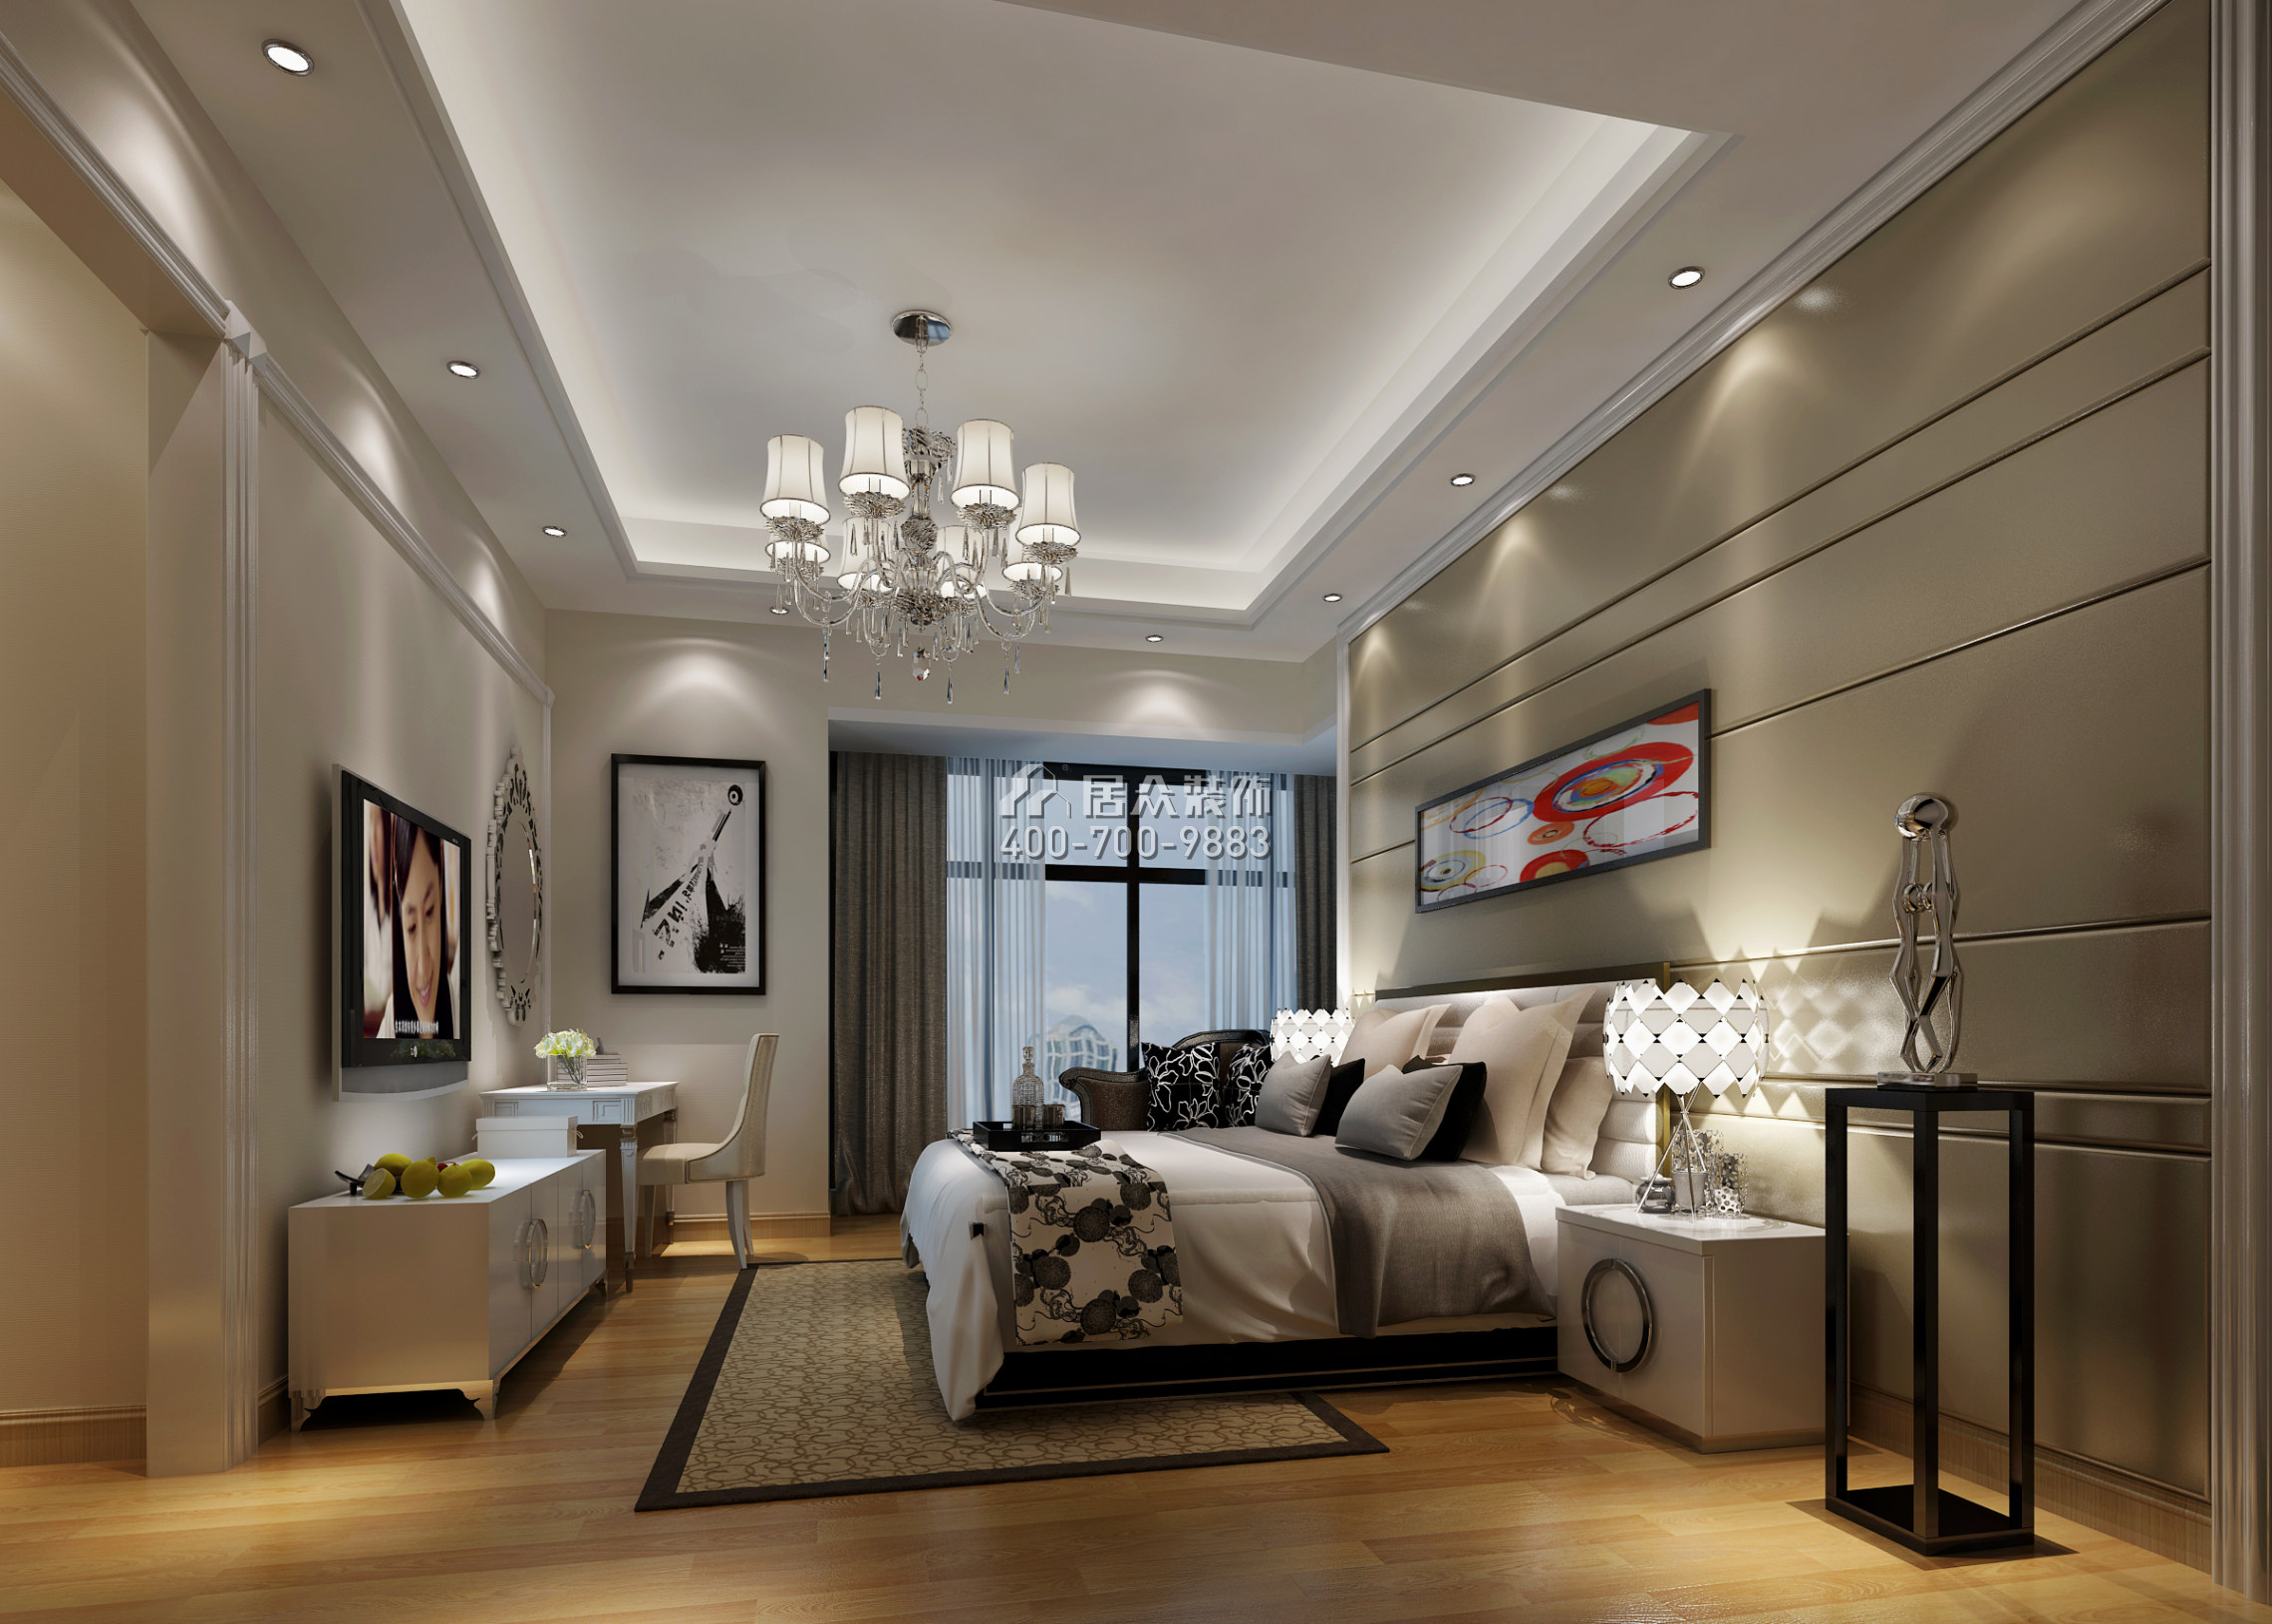 天悅灣170平方米現代簡約風格平層戶型臥室裝修效果圖